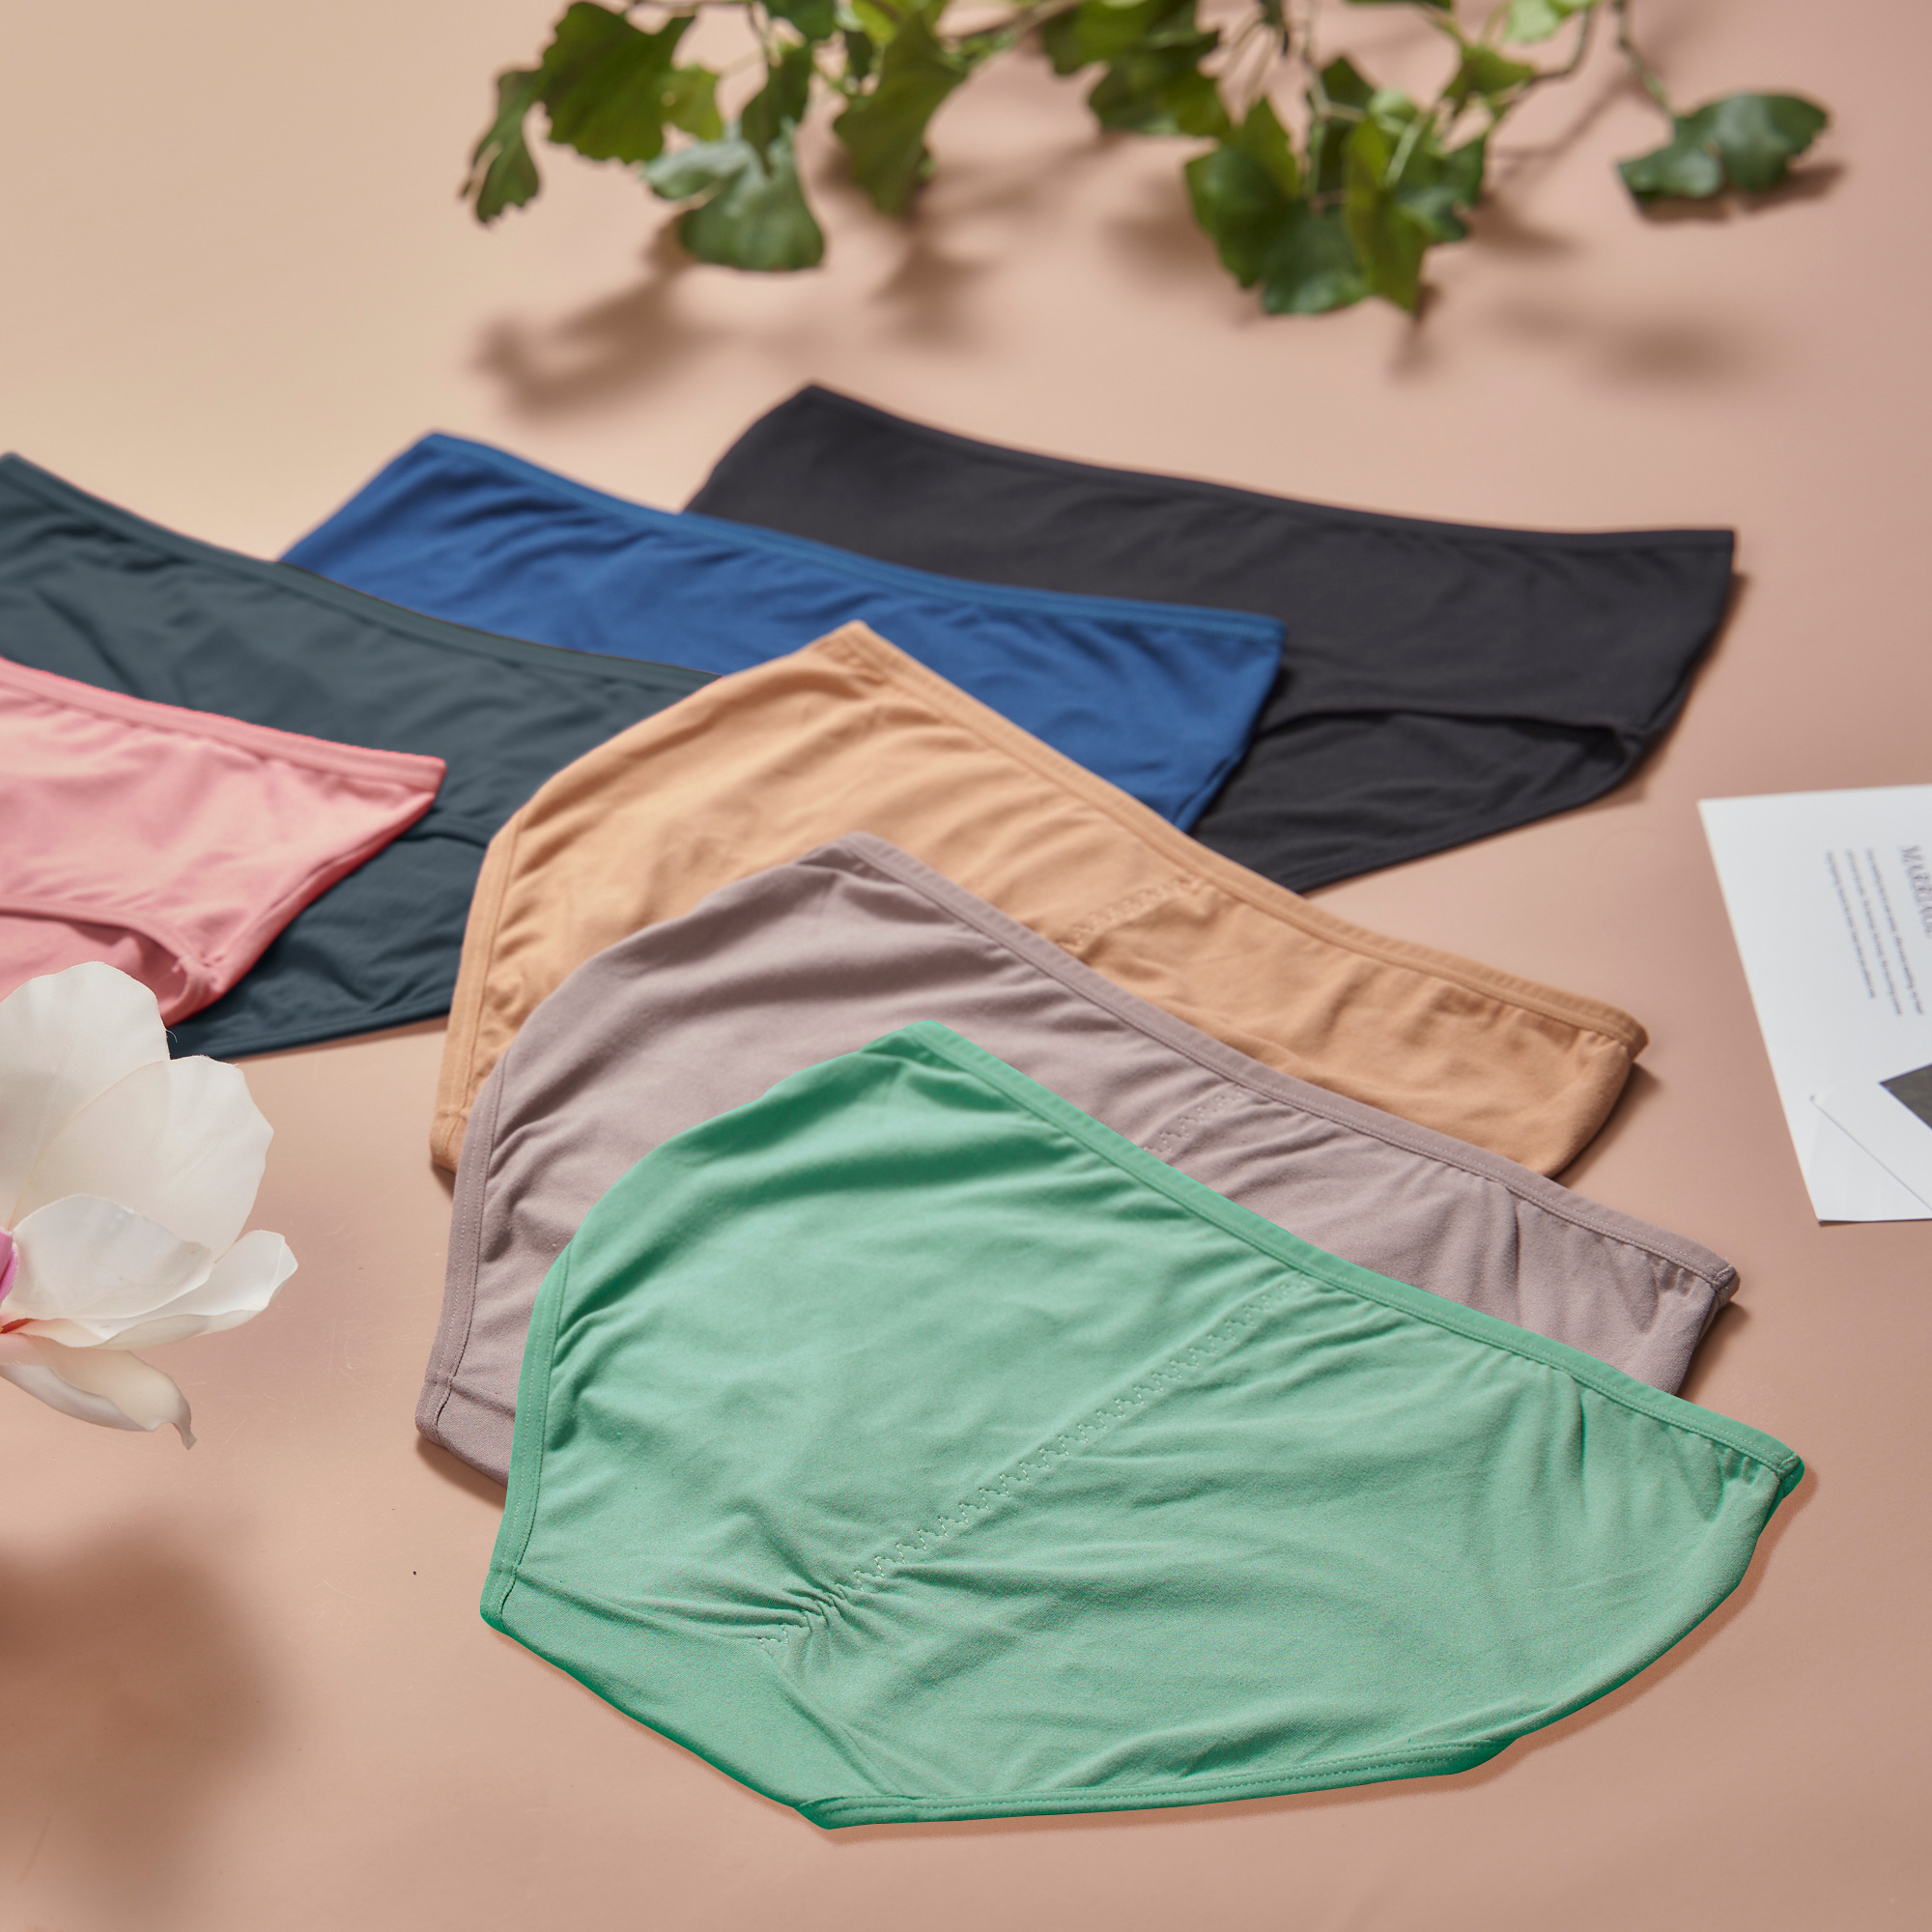 Ramita Medium Waist Briefs Ladies Underwear Random Design Multicolor (3 PCS)